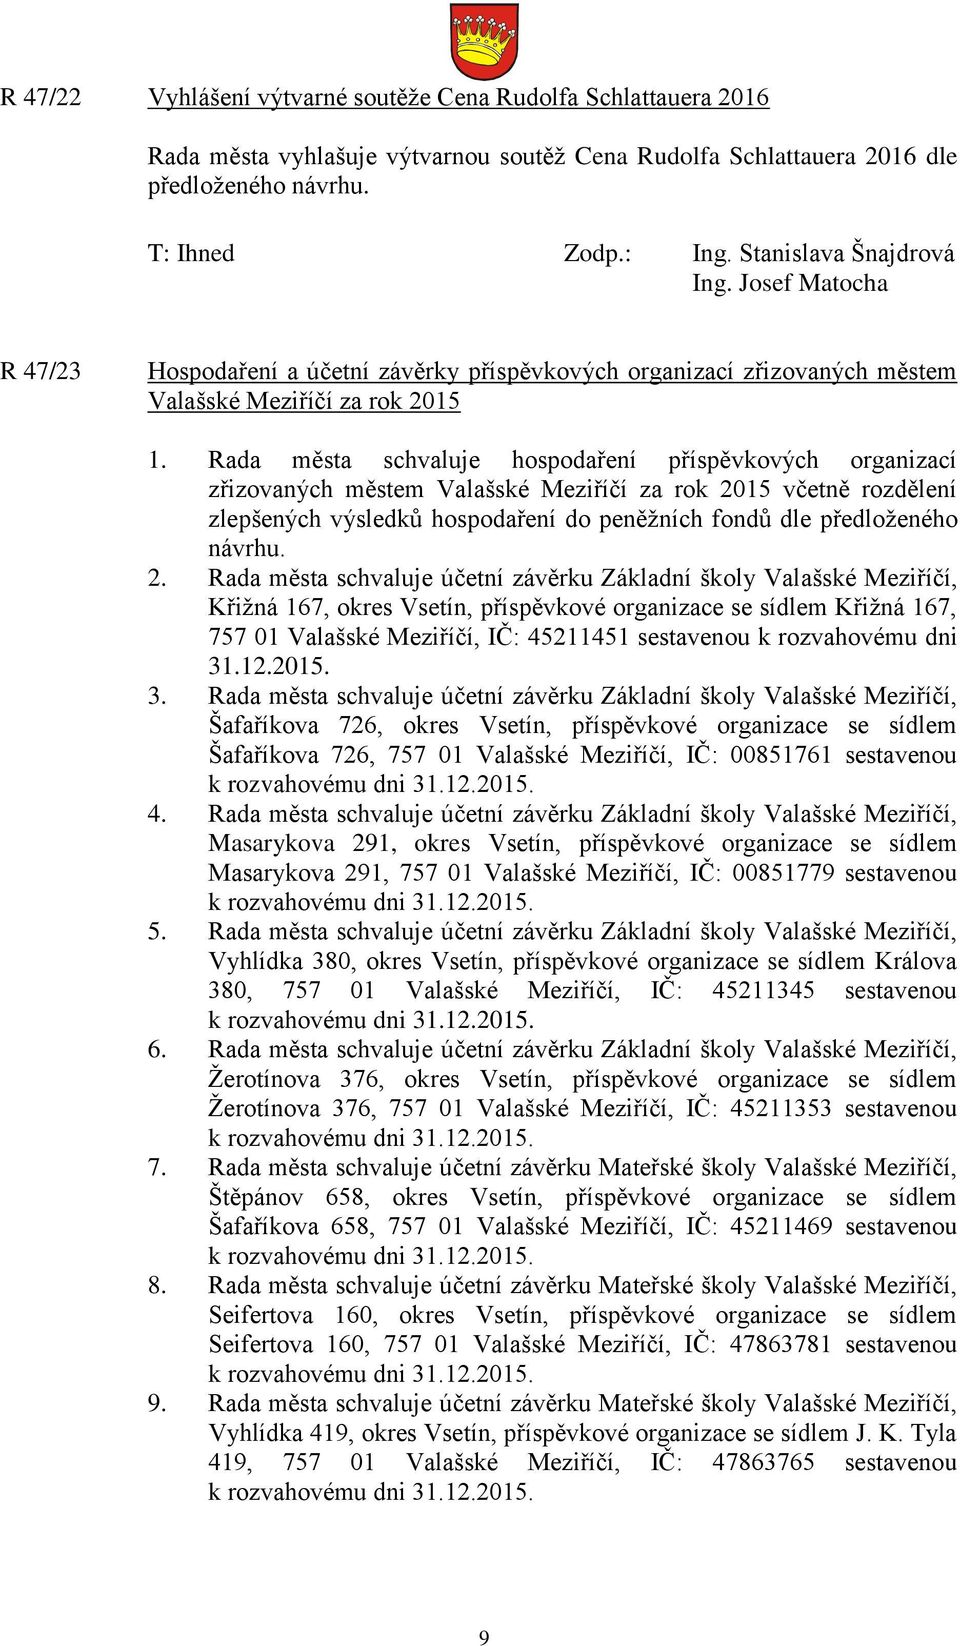 Rada města schvaluje hospodaření příspěvkových organizací zřizovaných městem Valašské Meziříčí za rok 2015 včetně rozdělení zlepšených výsledků hospodaření do peněžních fondů dle předloženého návrhu.